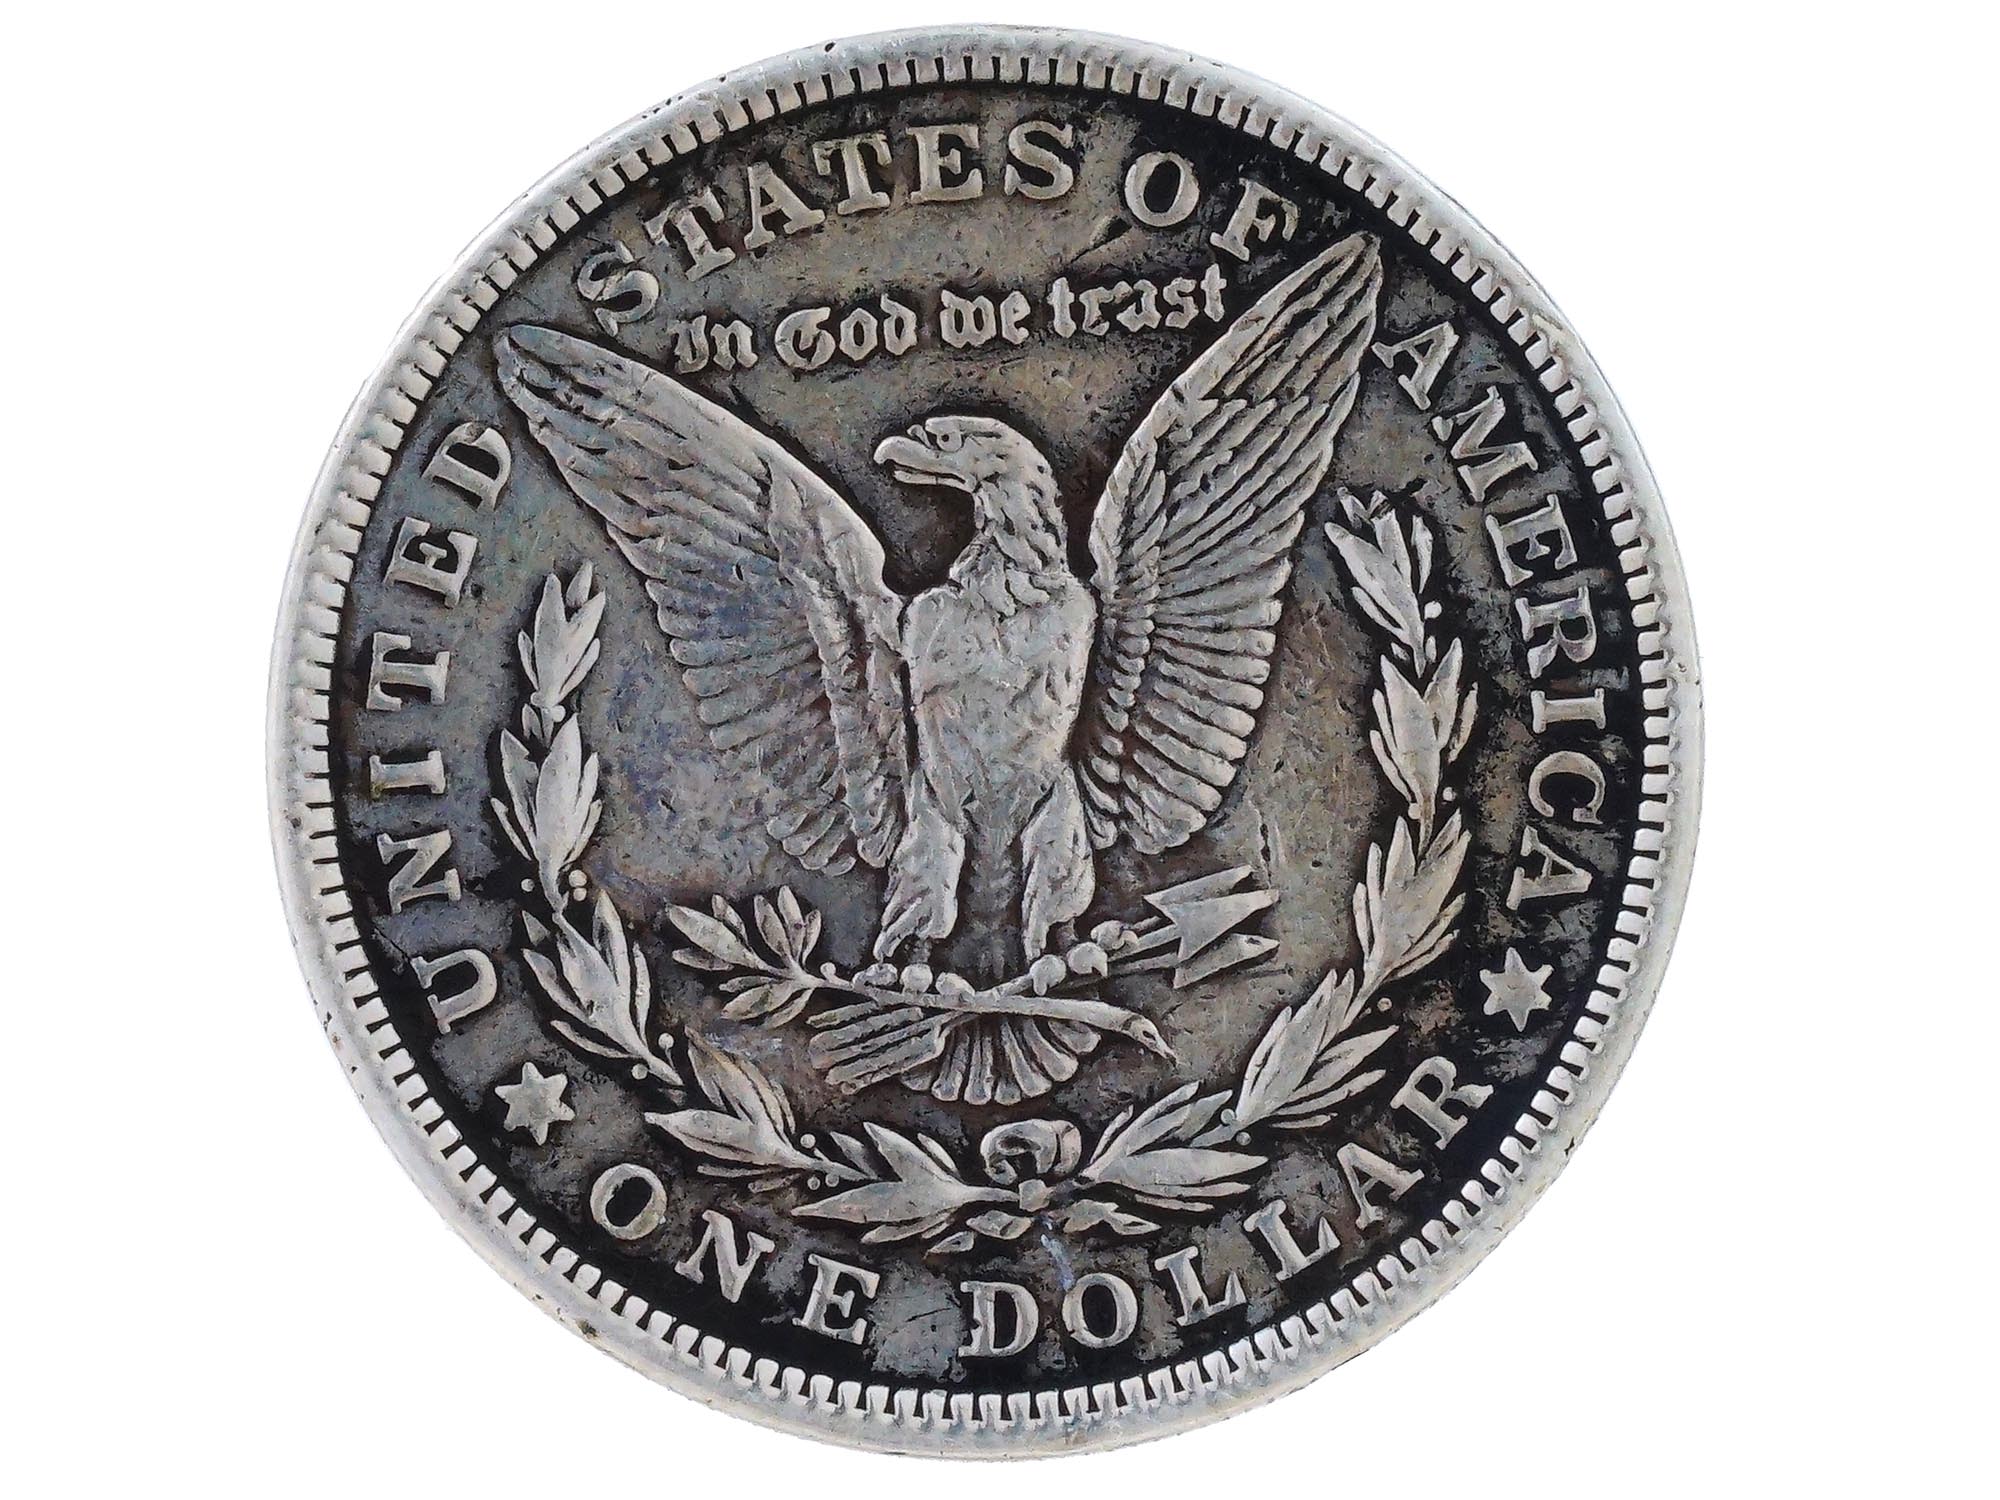 ANTIQUE AMERICAN 1921 MORGAN 1 DOLLAR SILVER COIN PIC-1